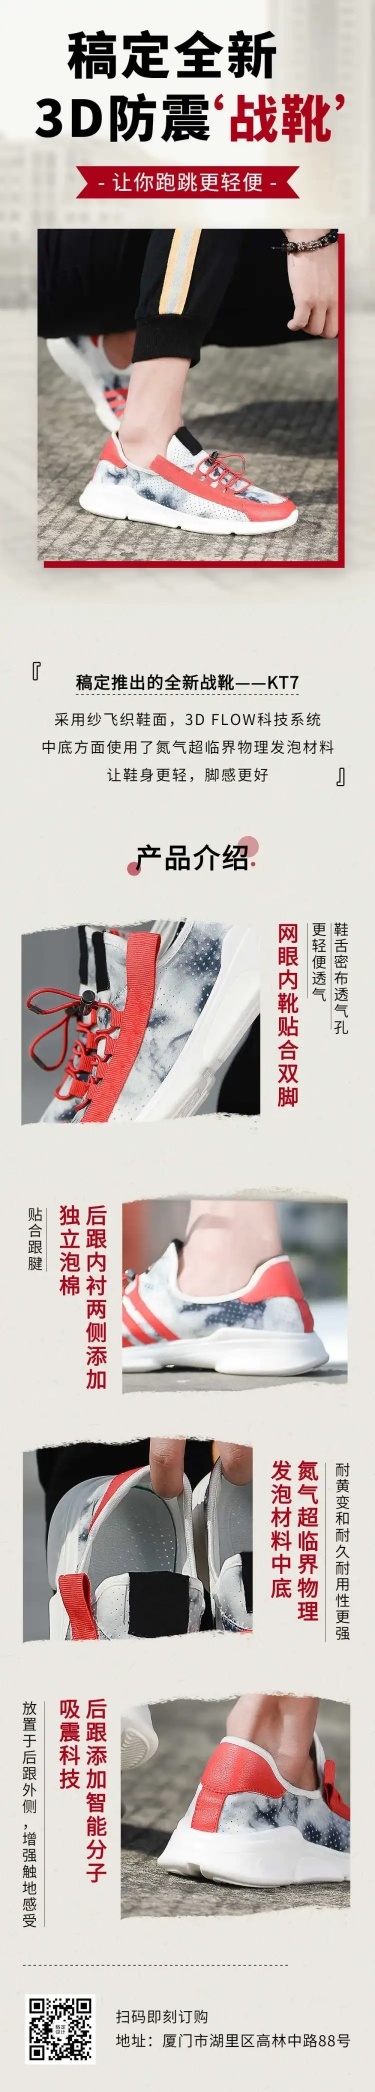 活动促销产品展示鞋服文章长图